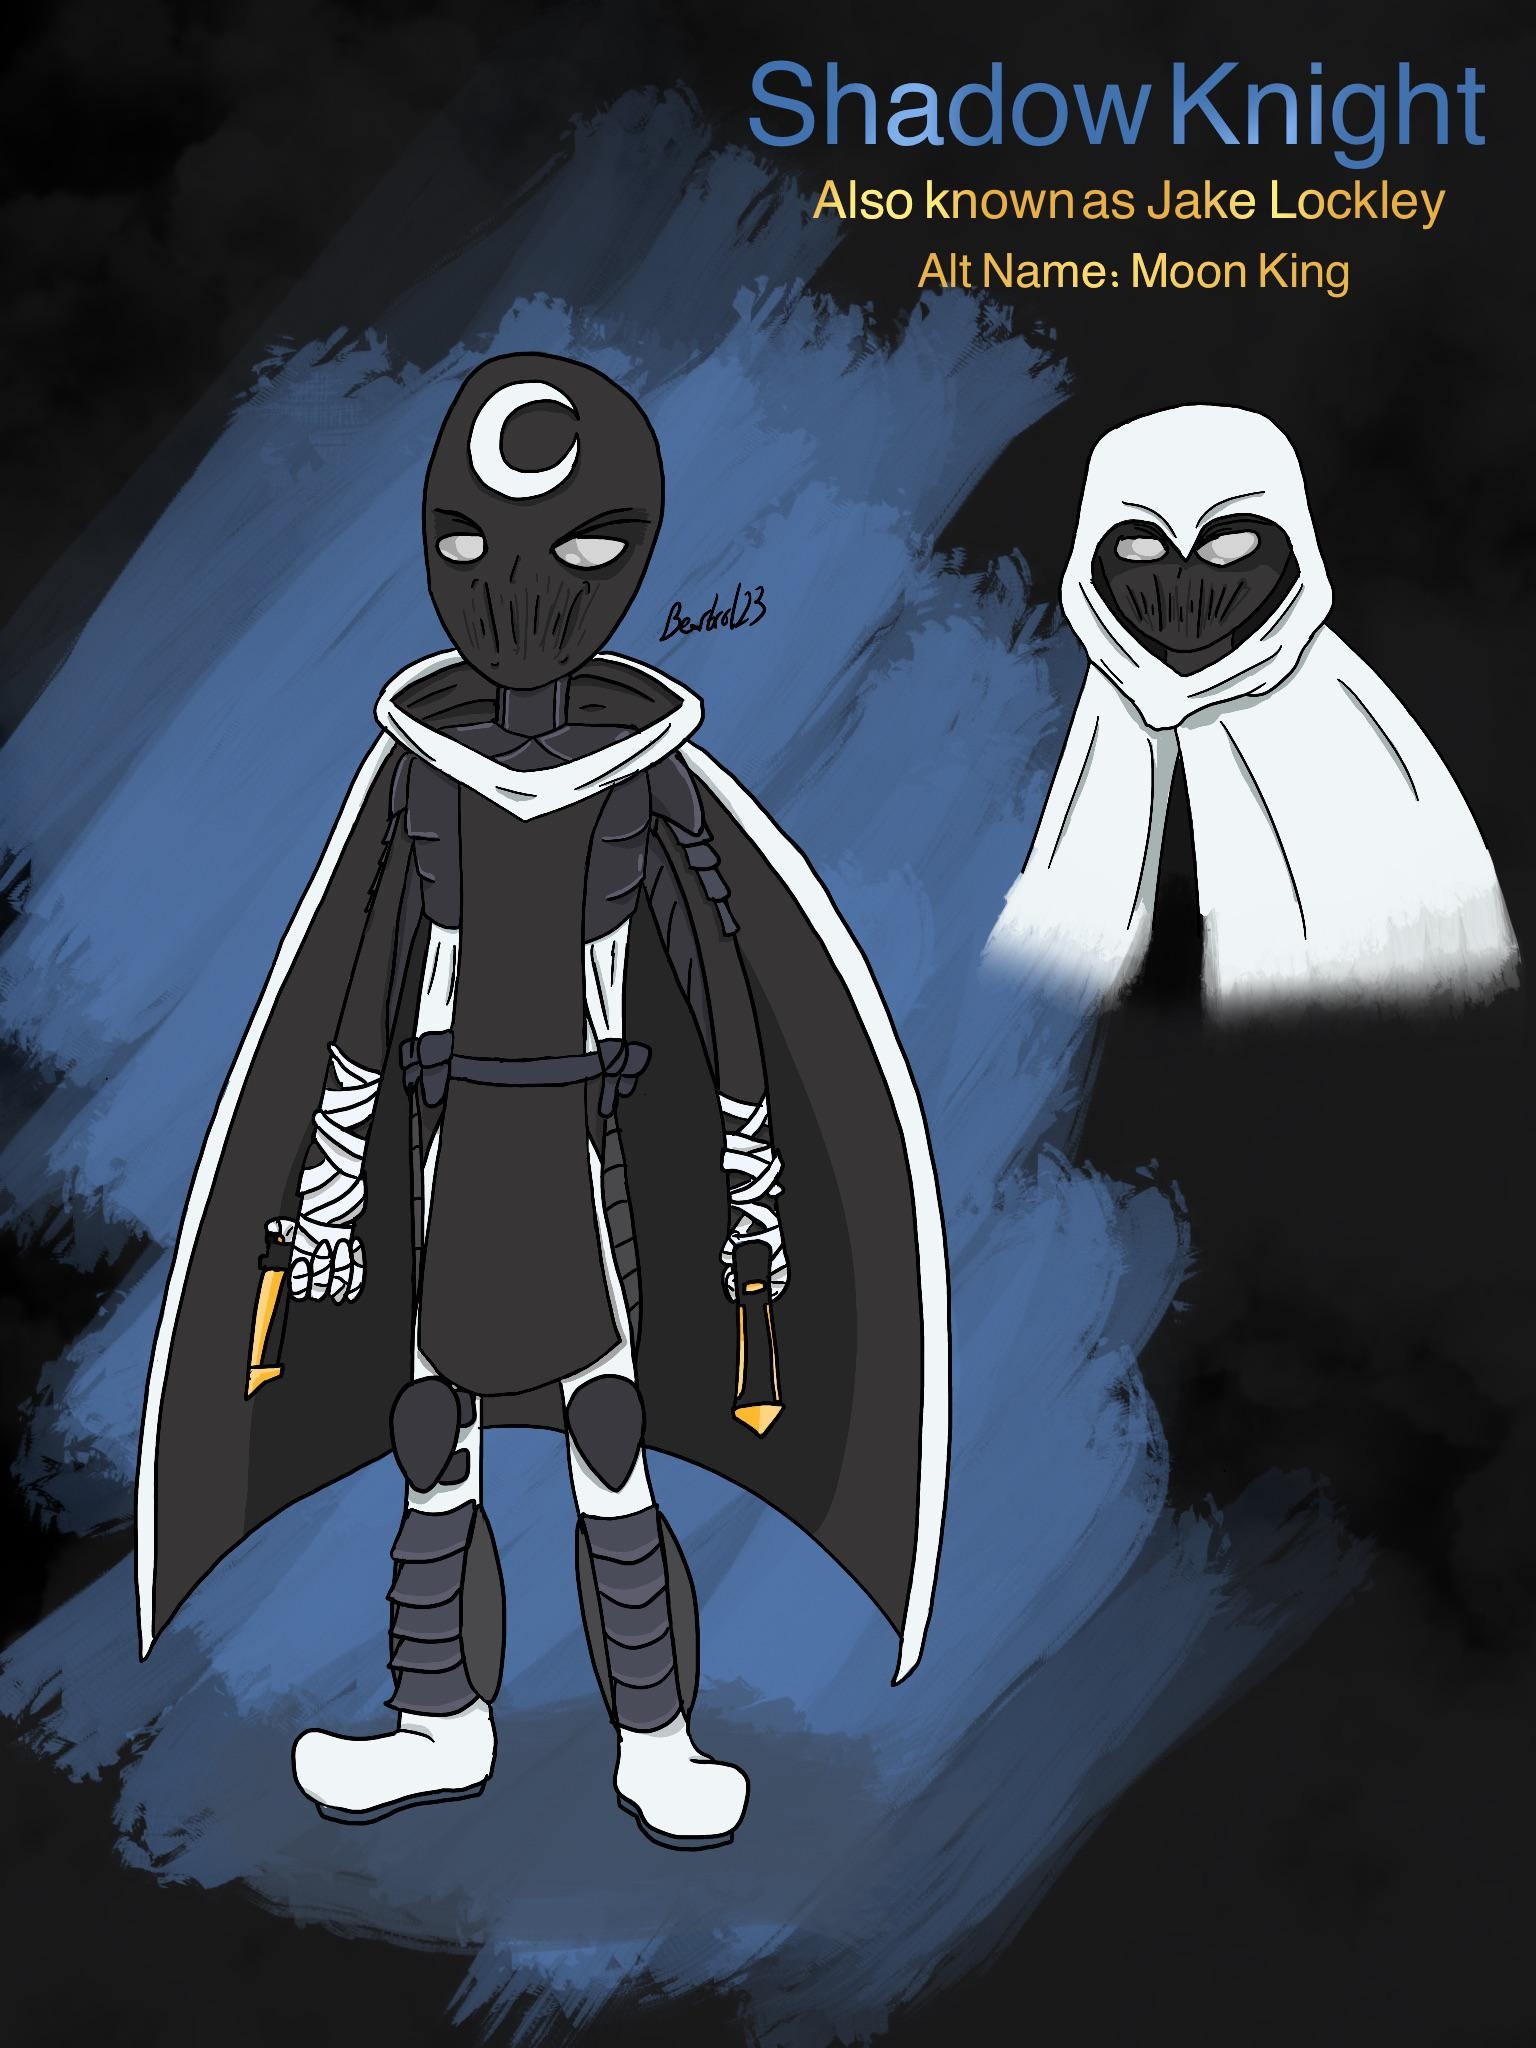 Jake Lockley comics, Moon Knight suit design, Fan creation, OC artwork, 1540x2050 HD Handy